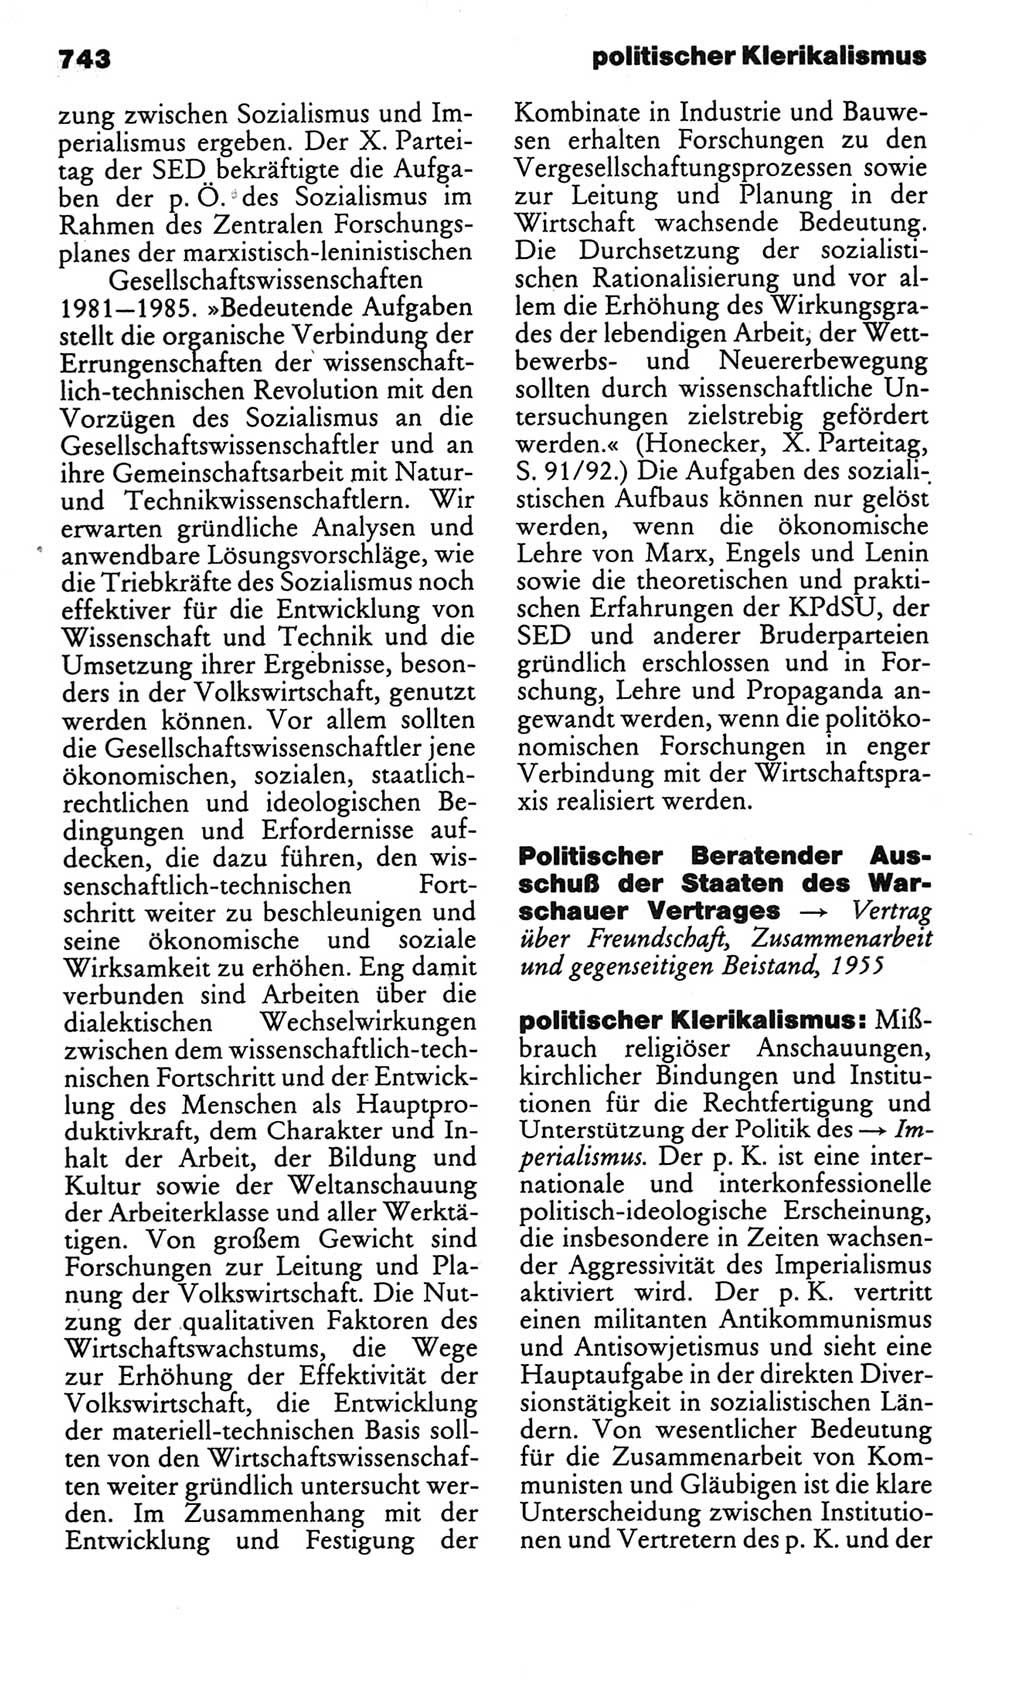 Kleines politisches Wörterbuch [Deutsche Demokratische Republik (DDR)] 1986, Seite 743 (Kl. pol. Wb. DDR 1986, S. 743)